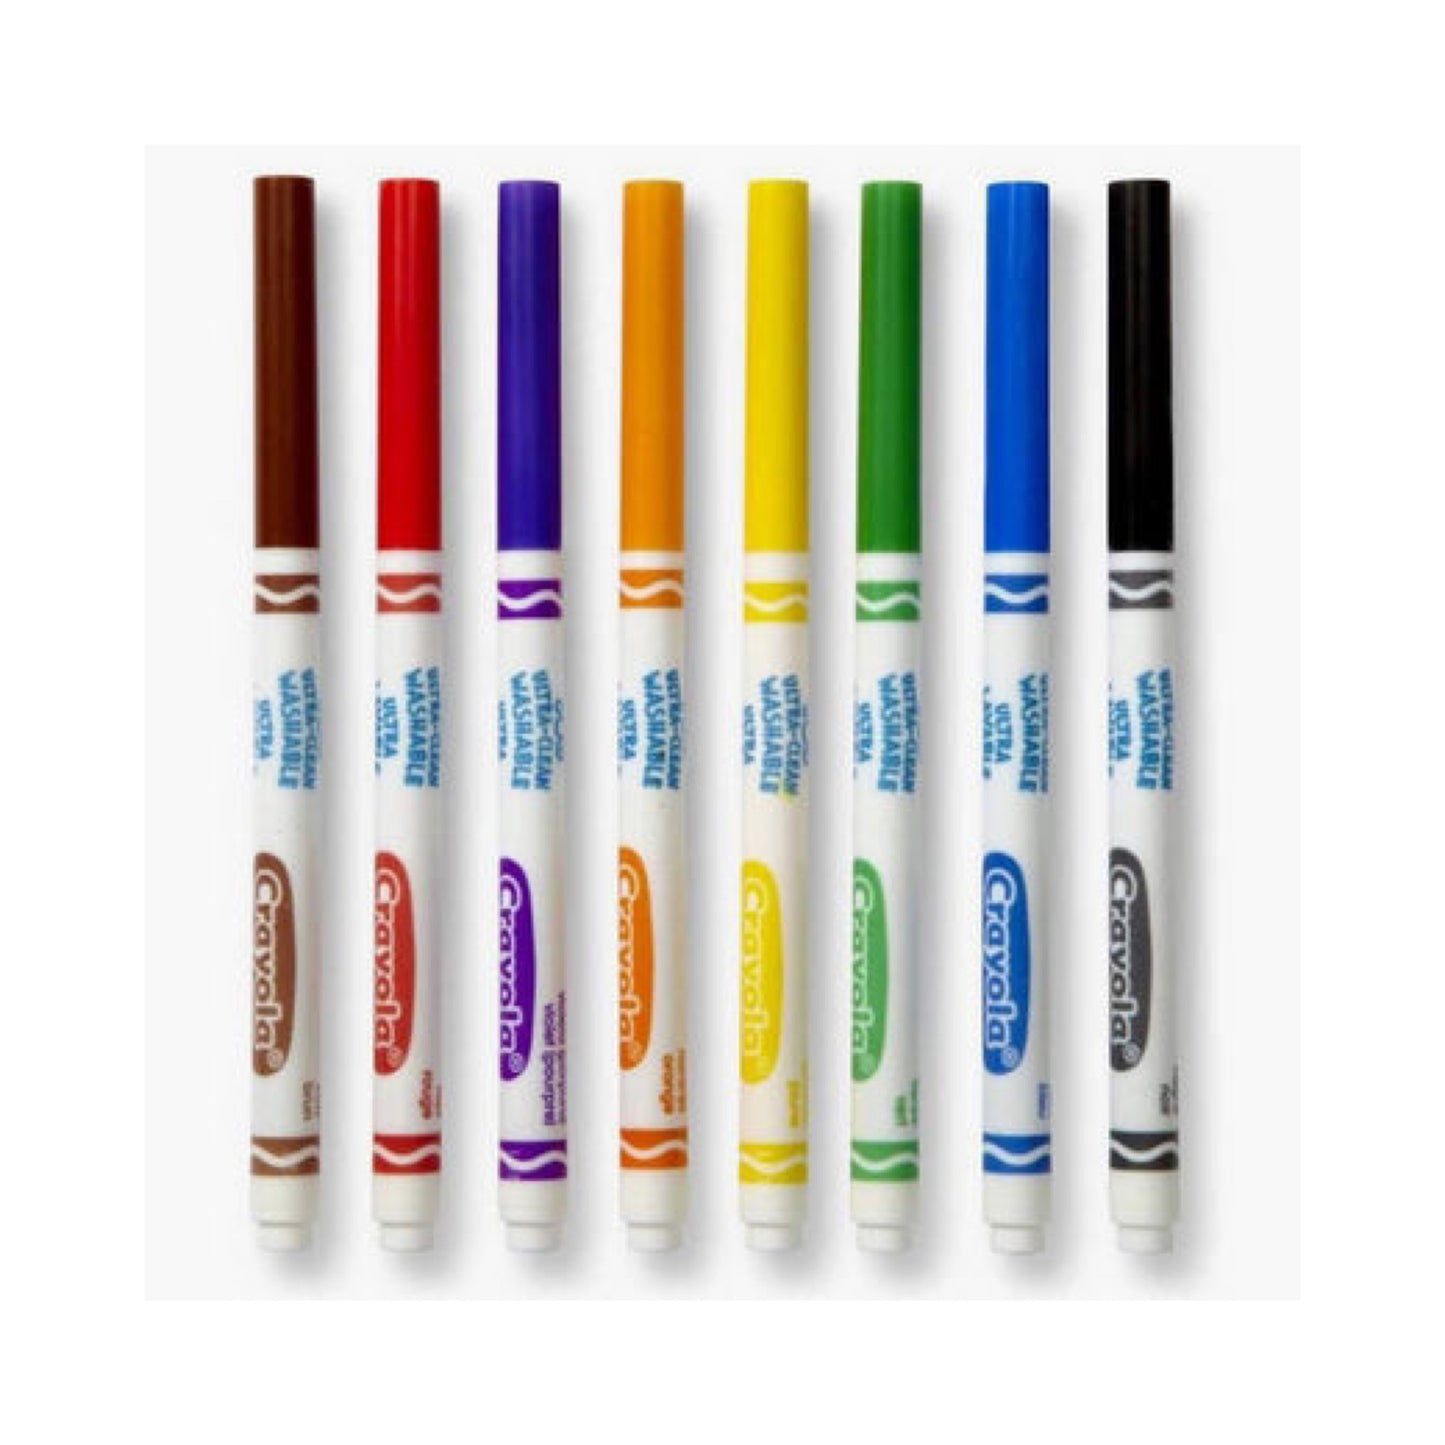 Crayola Ultra Clean Washable Markers 8 Colors || الوان كرايولا قابله للغسل ٨ لون⁩